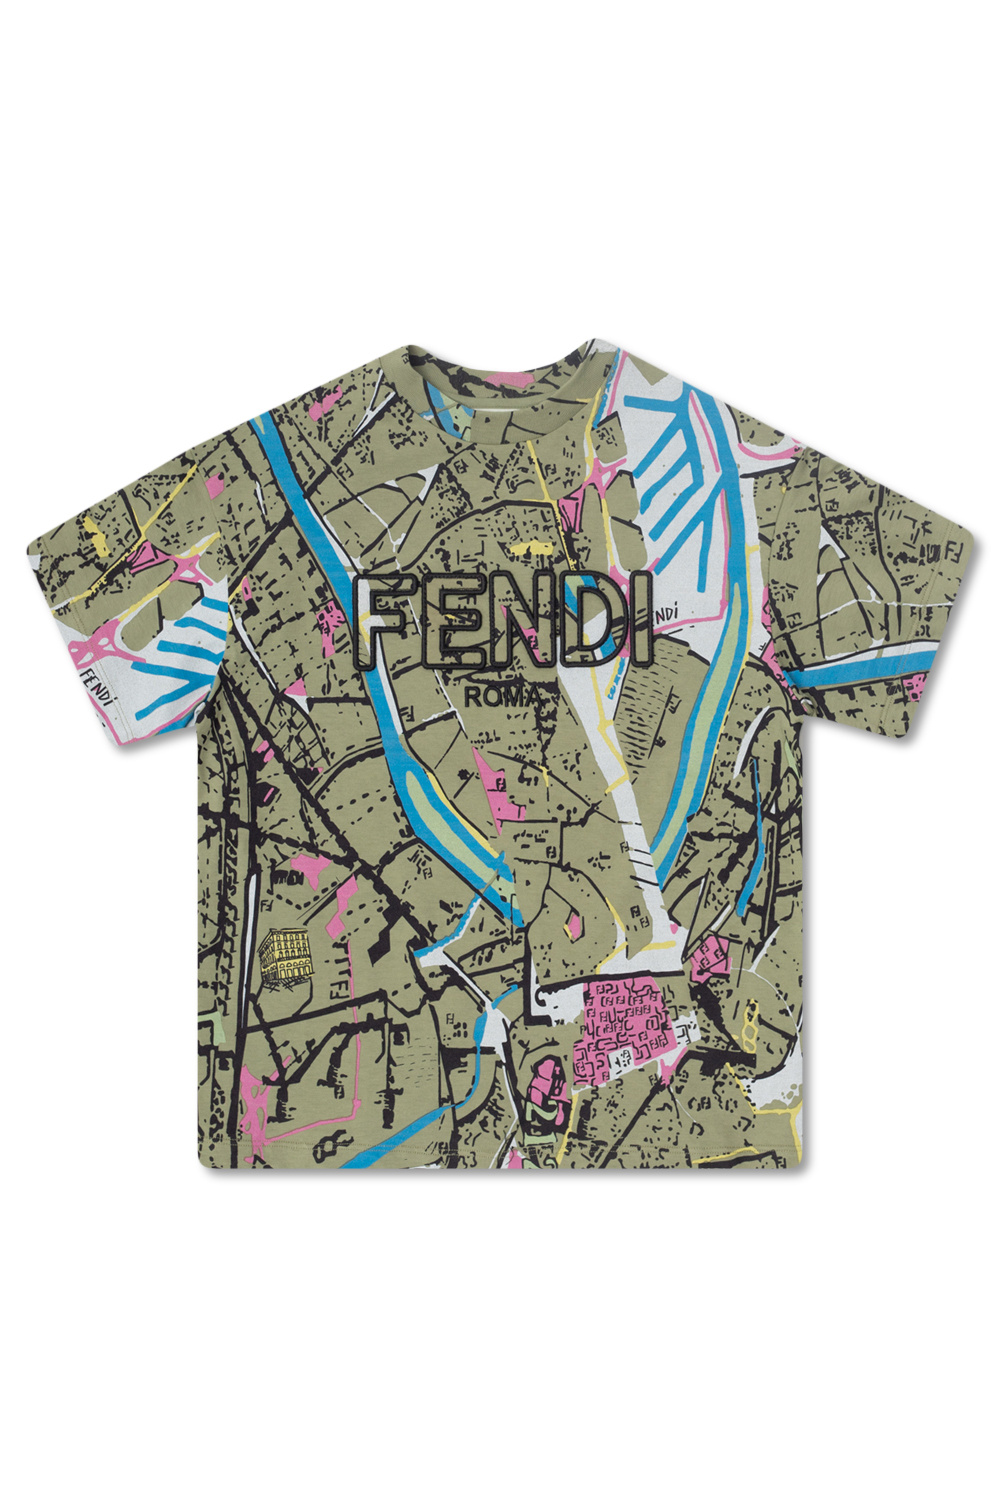 Fendi - Girls Pink Cotton Bag T-Shirt